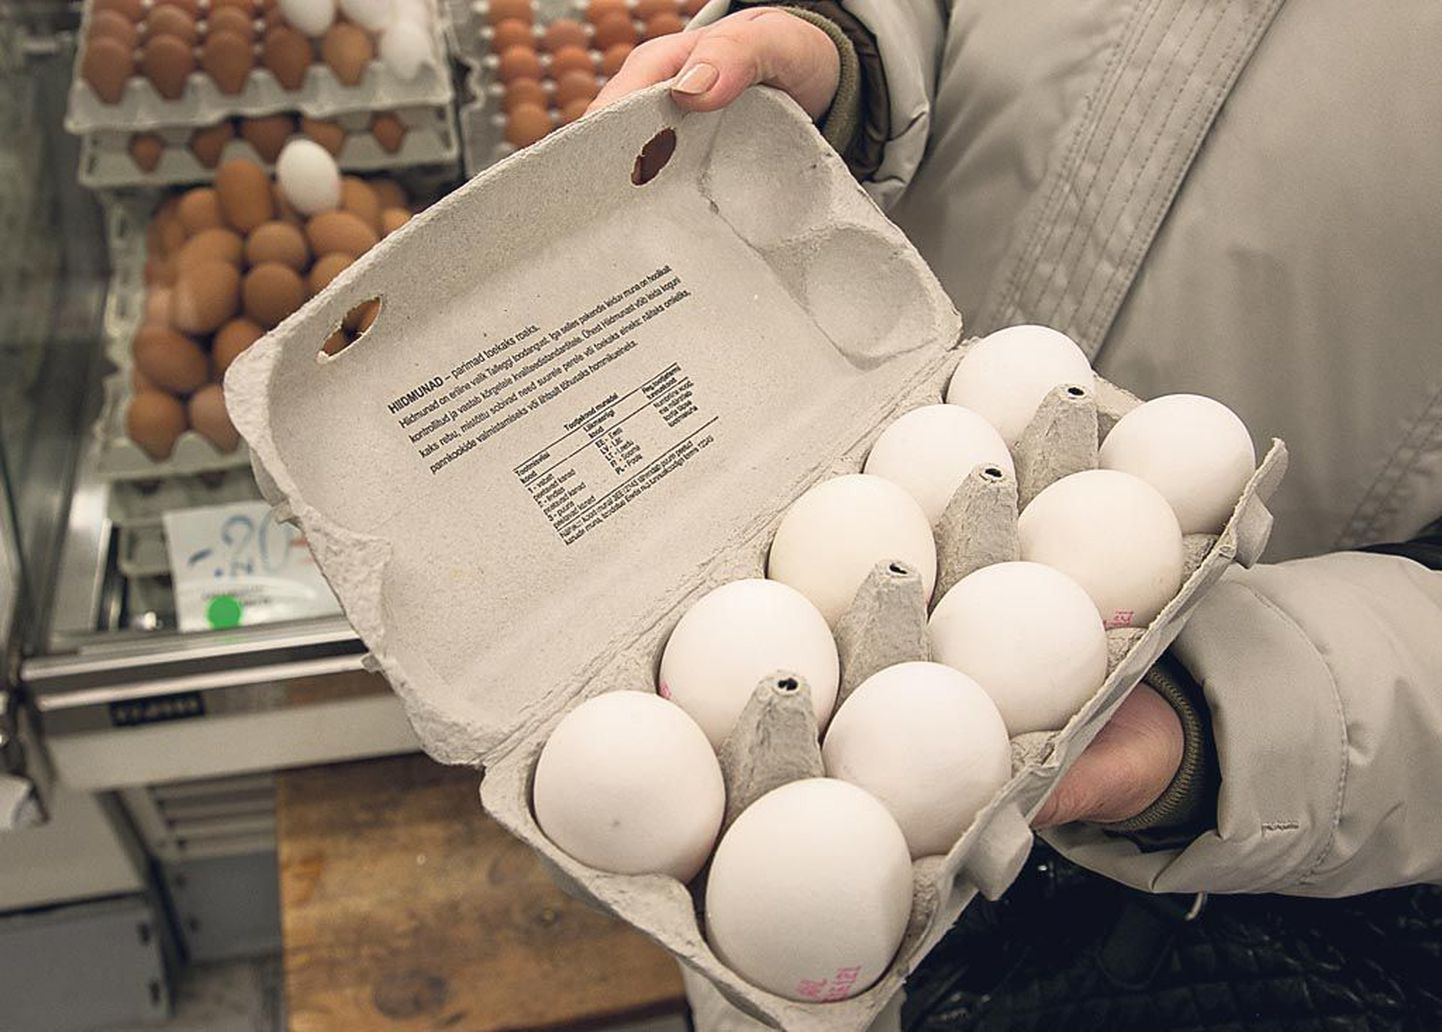 Lihavõttepühade eel eelistavad ostjad valgeid mune.